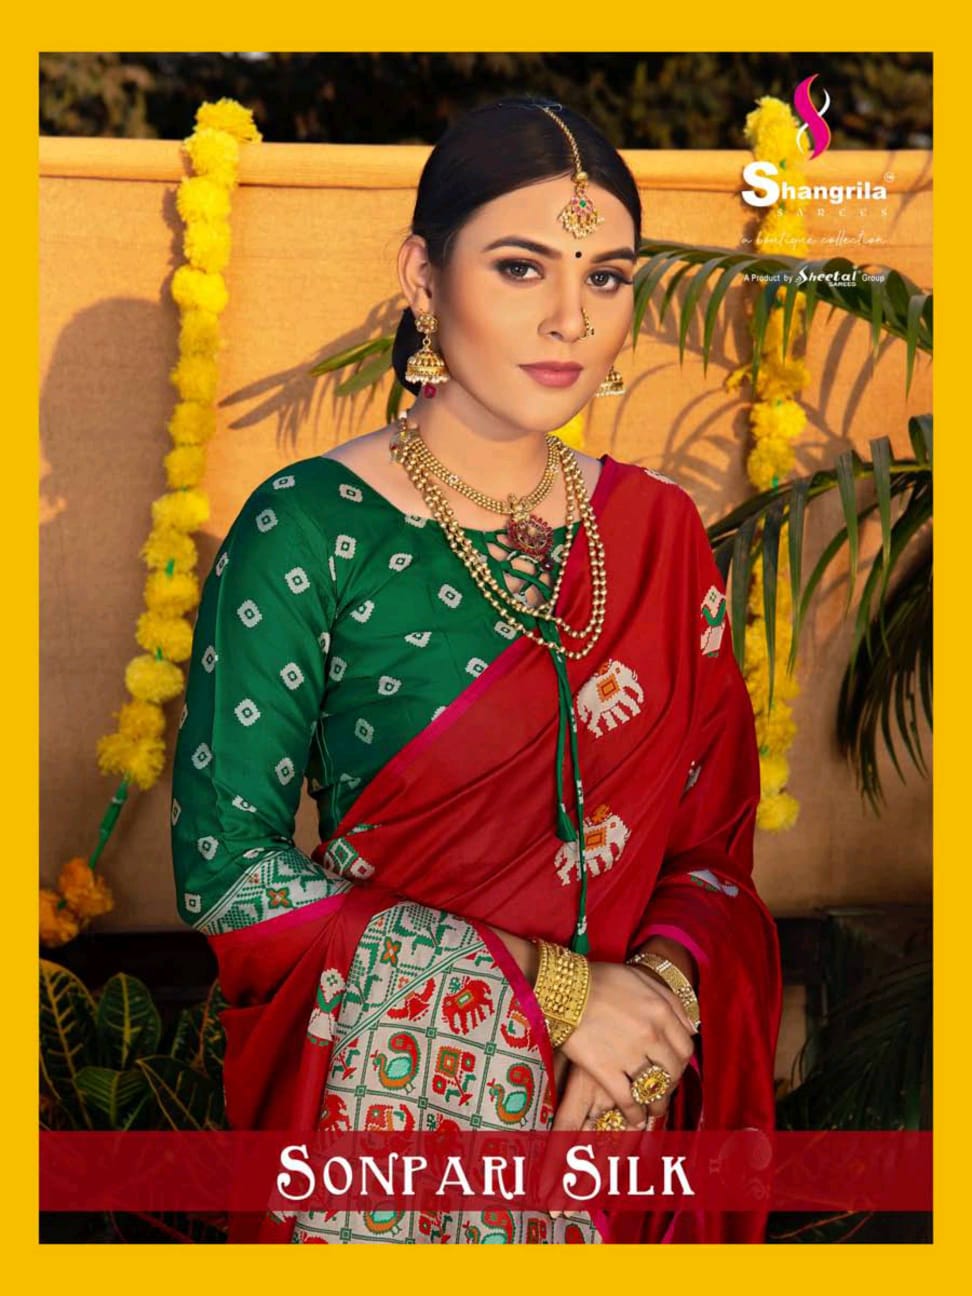 Shangrila Sonpari Silk Classy Look Weaving Silk Saree At Seller Price